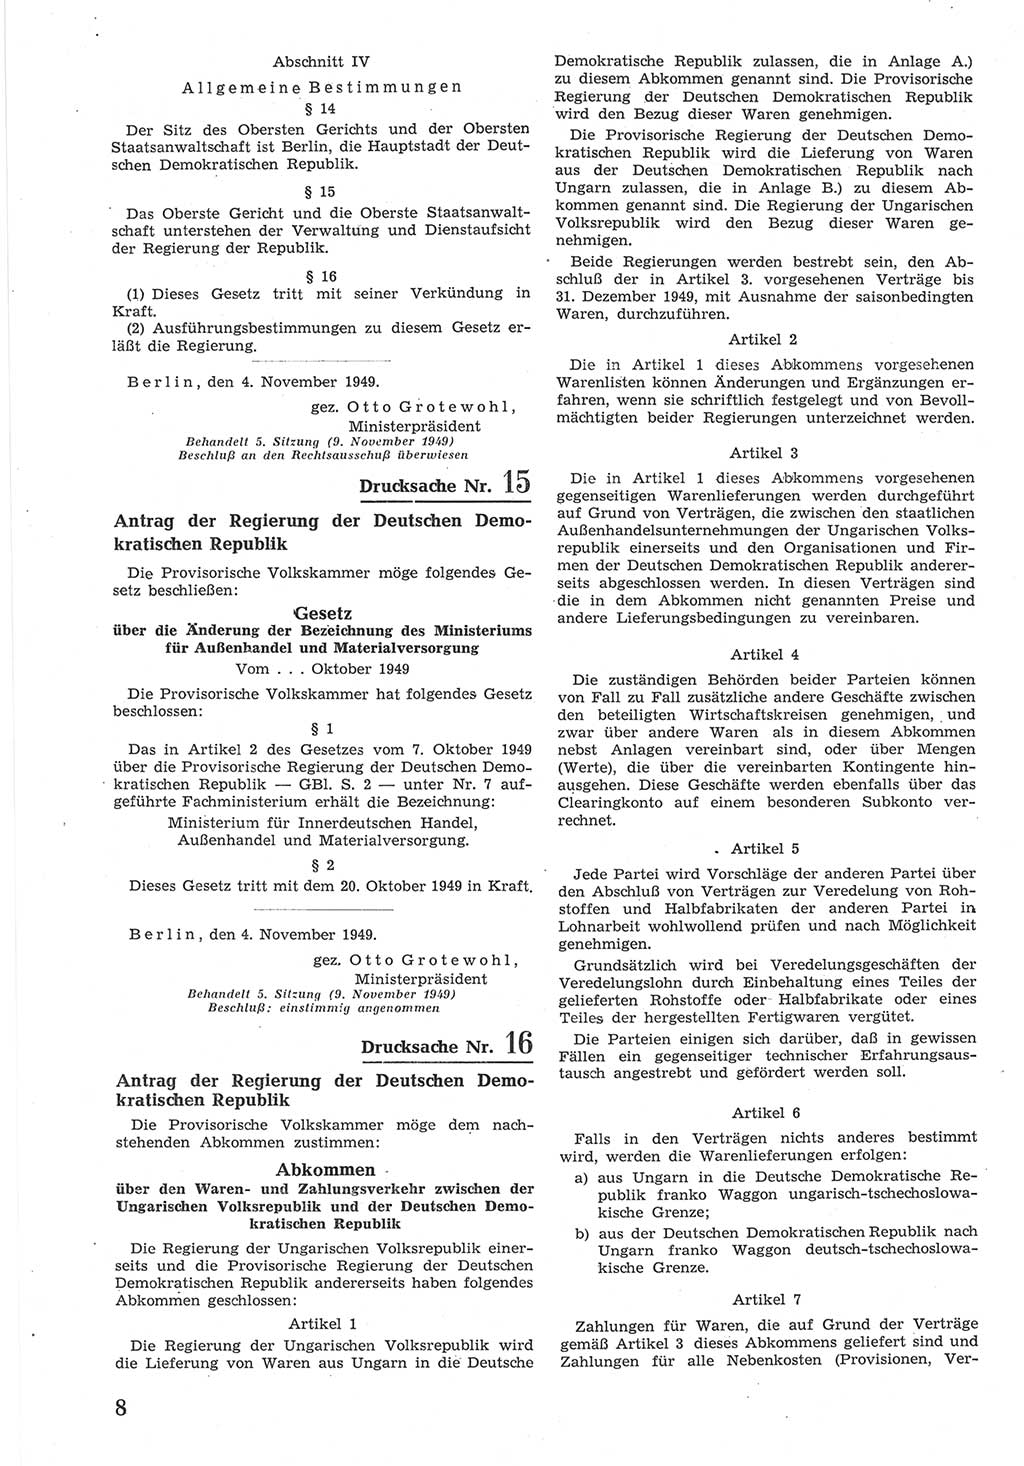 Provisorische Volkskammer (VK) der Deutschen Demokratischen Republik (DDR) 1949-1950, Dokument 576 (Prov. VK DDR 1949-1950, Dok. 576)